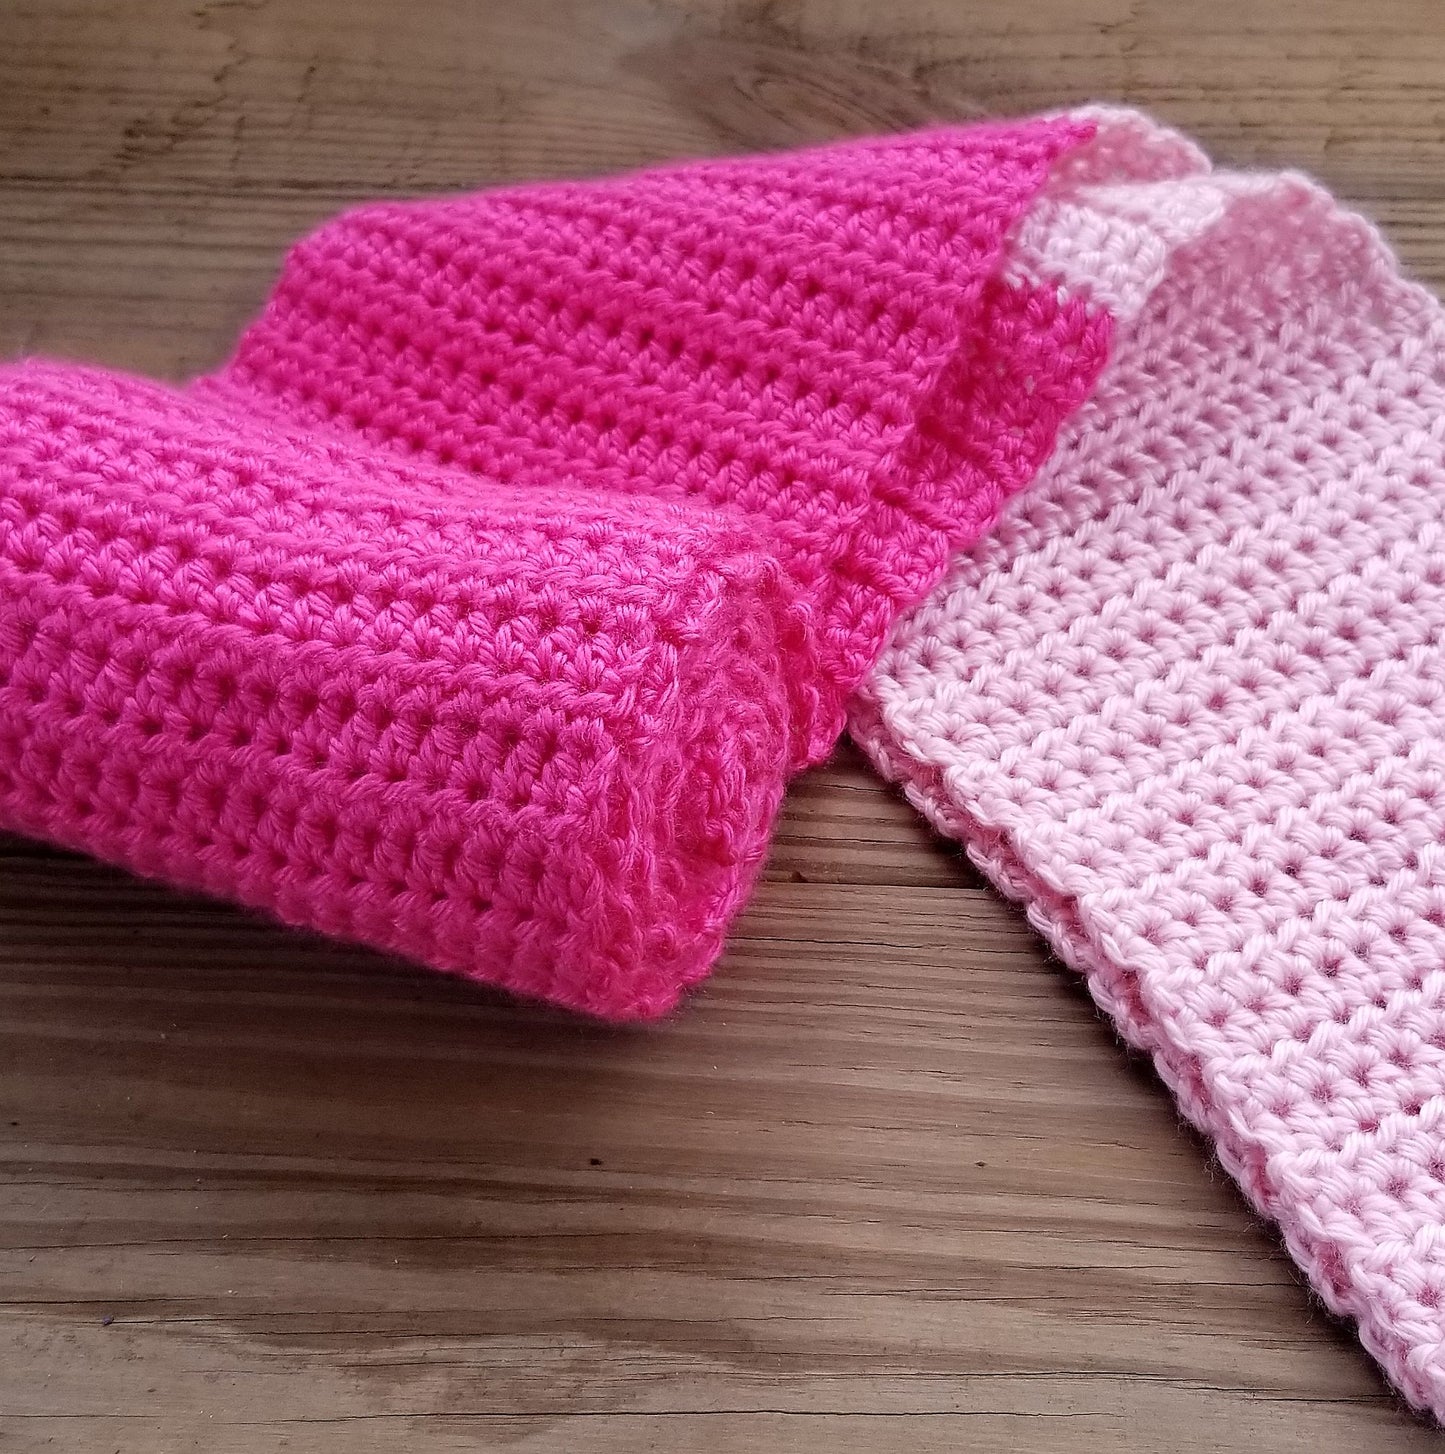 Two-Toned Scarf Crochet Pattern PDF